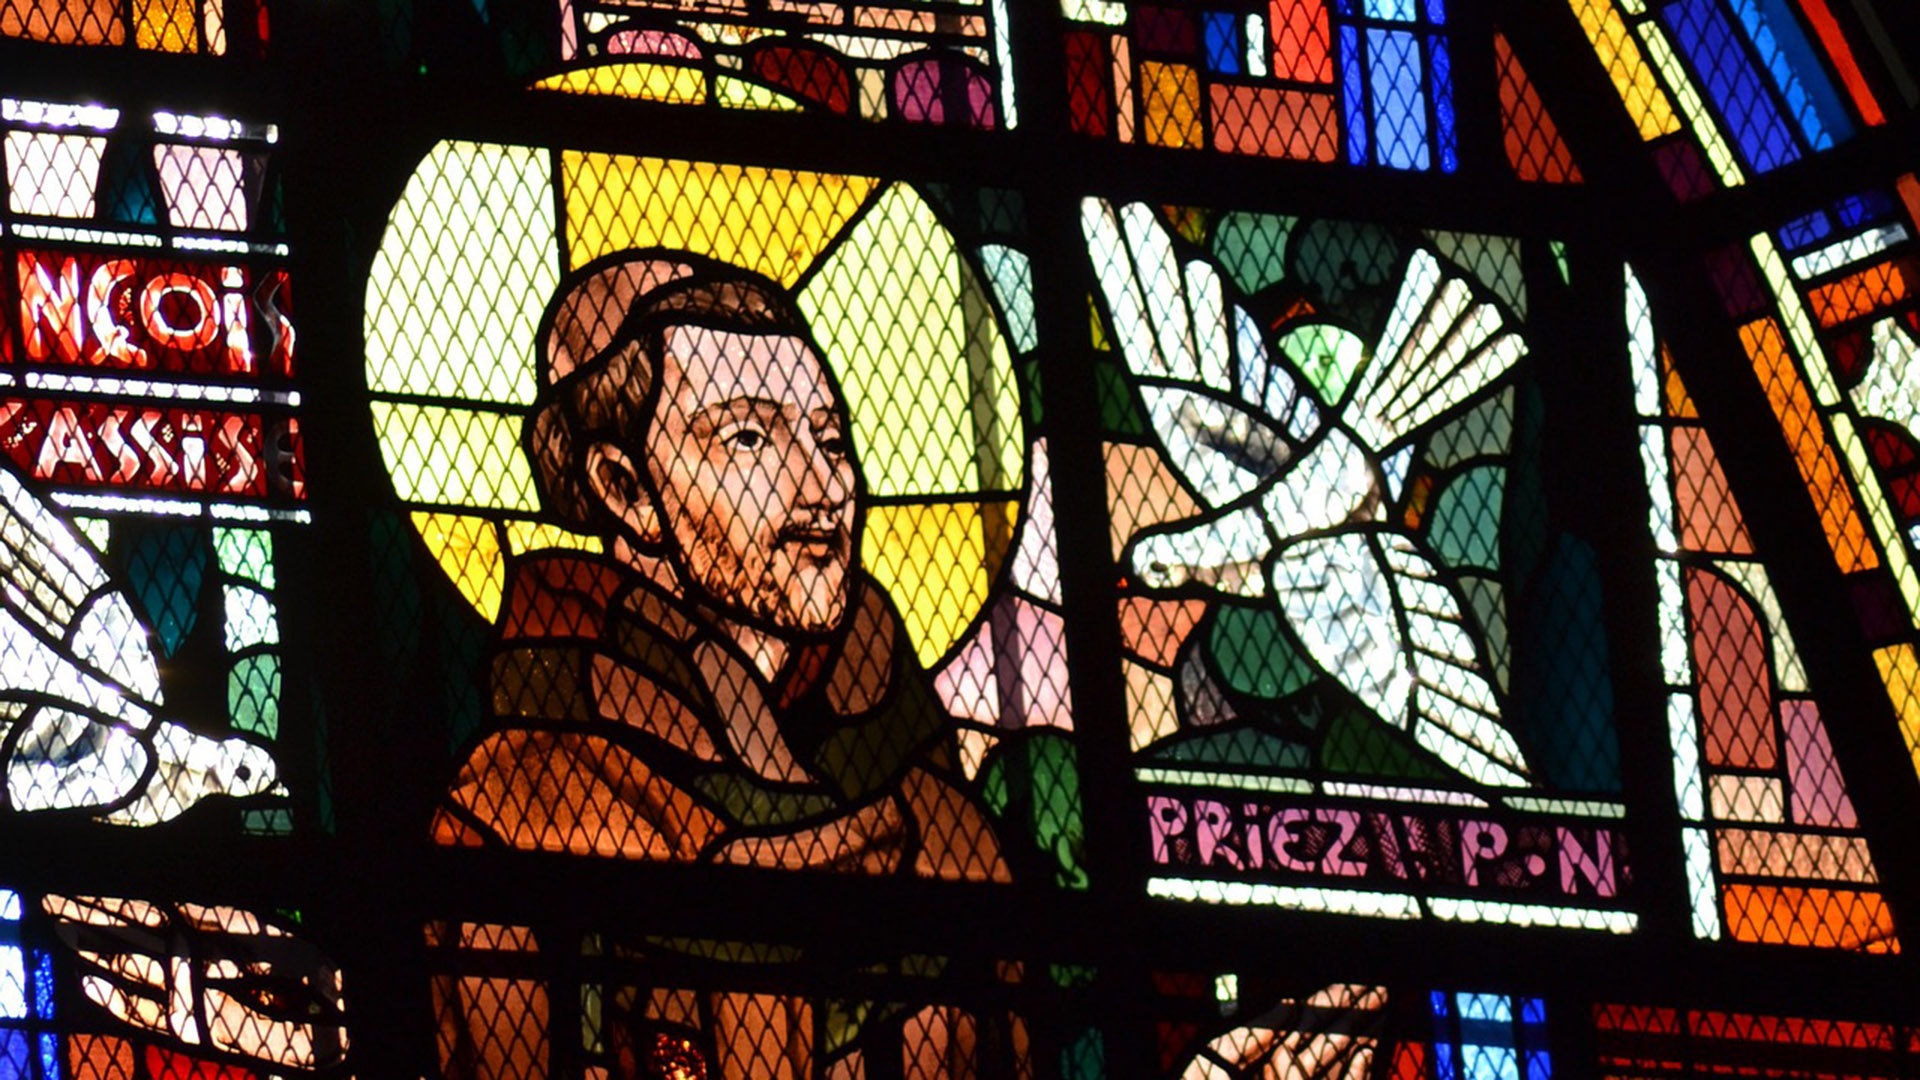 Buntes Kirchenfenster mit Franz von Assisi